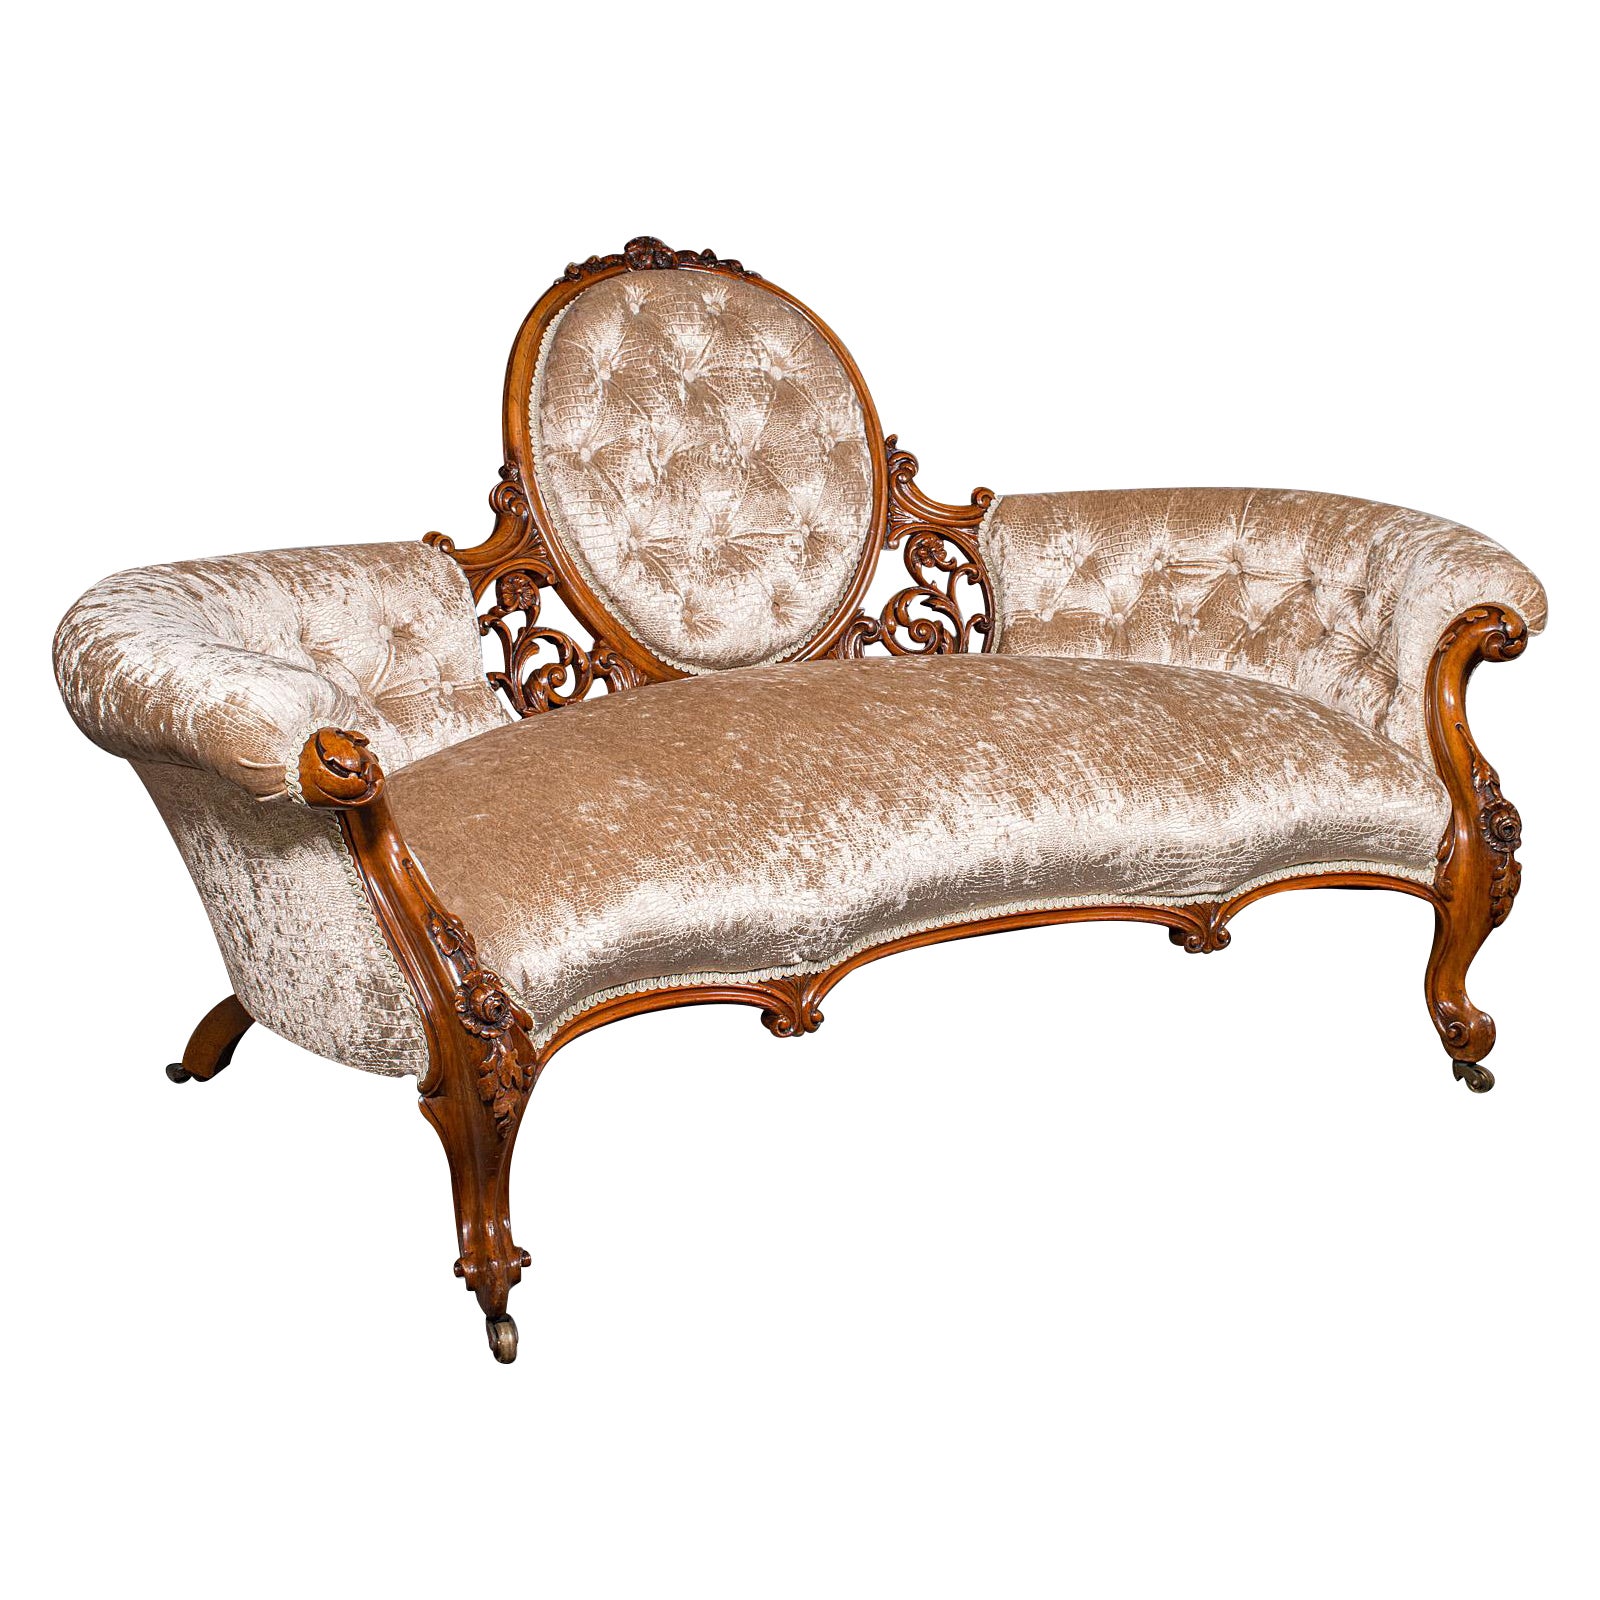 Antikes geschnitztes Sofa mit Löffelrückenlehne, englisch, Nussbaum, Showpiece, viktorianisch